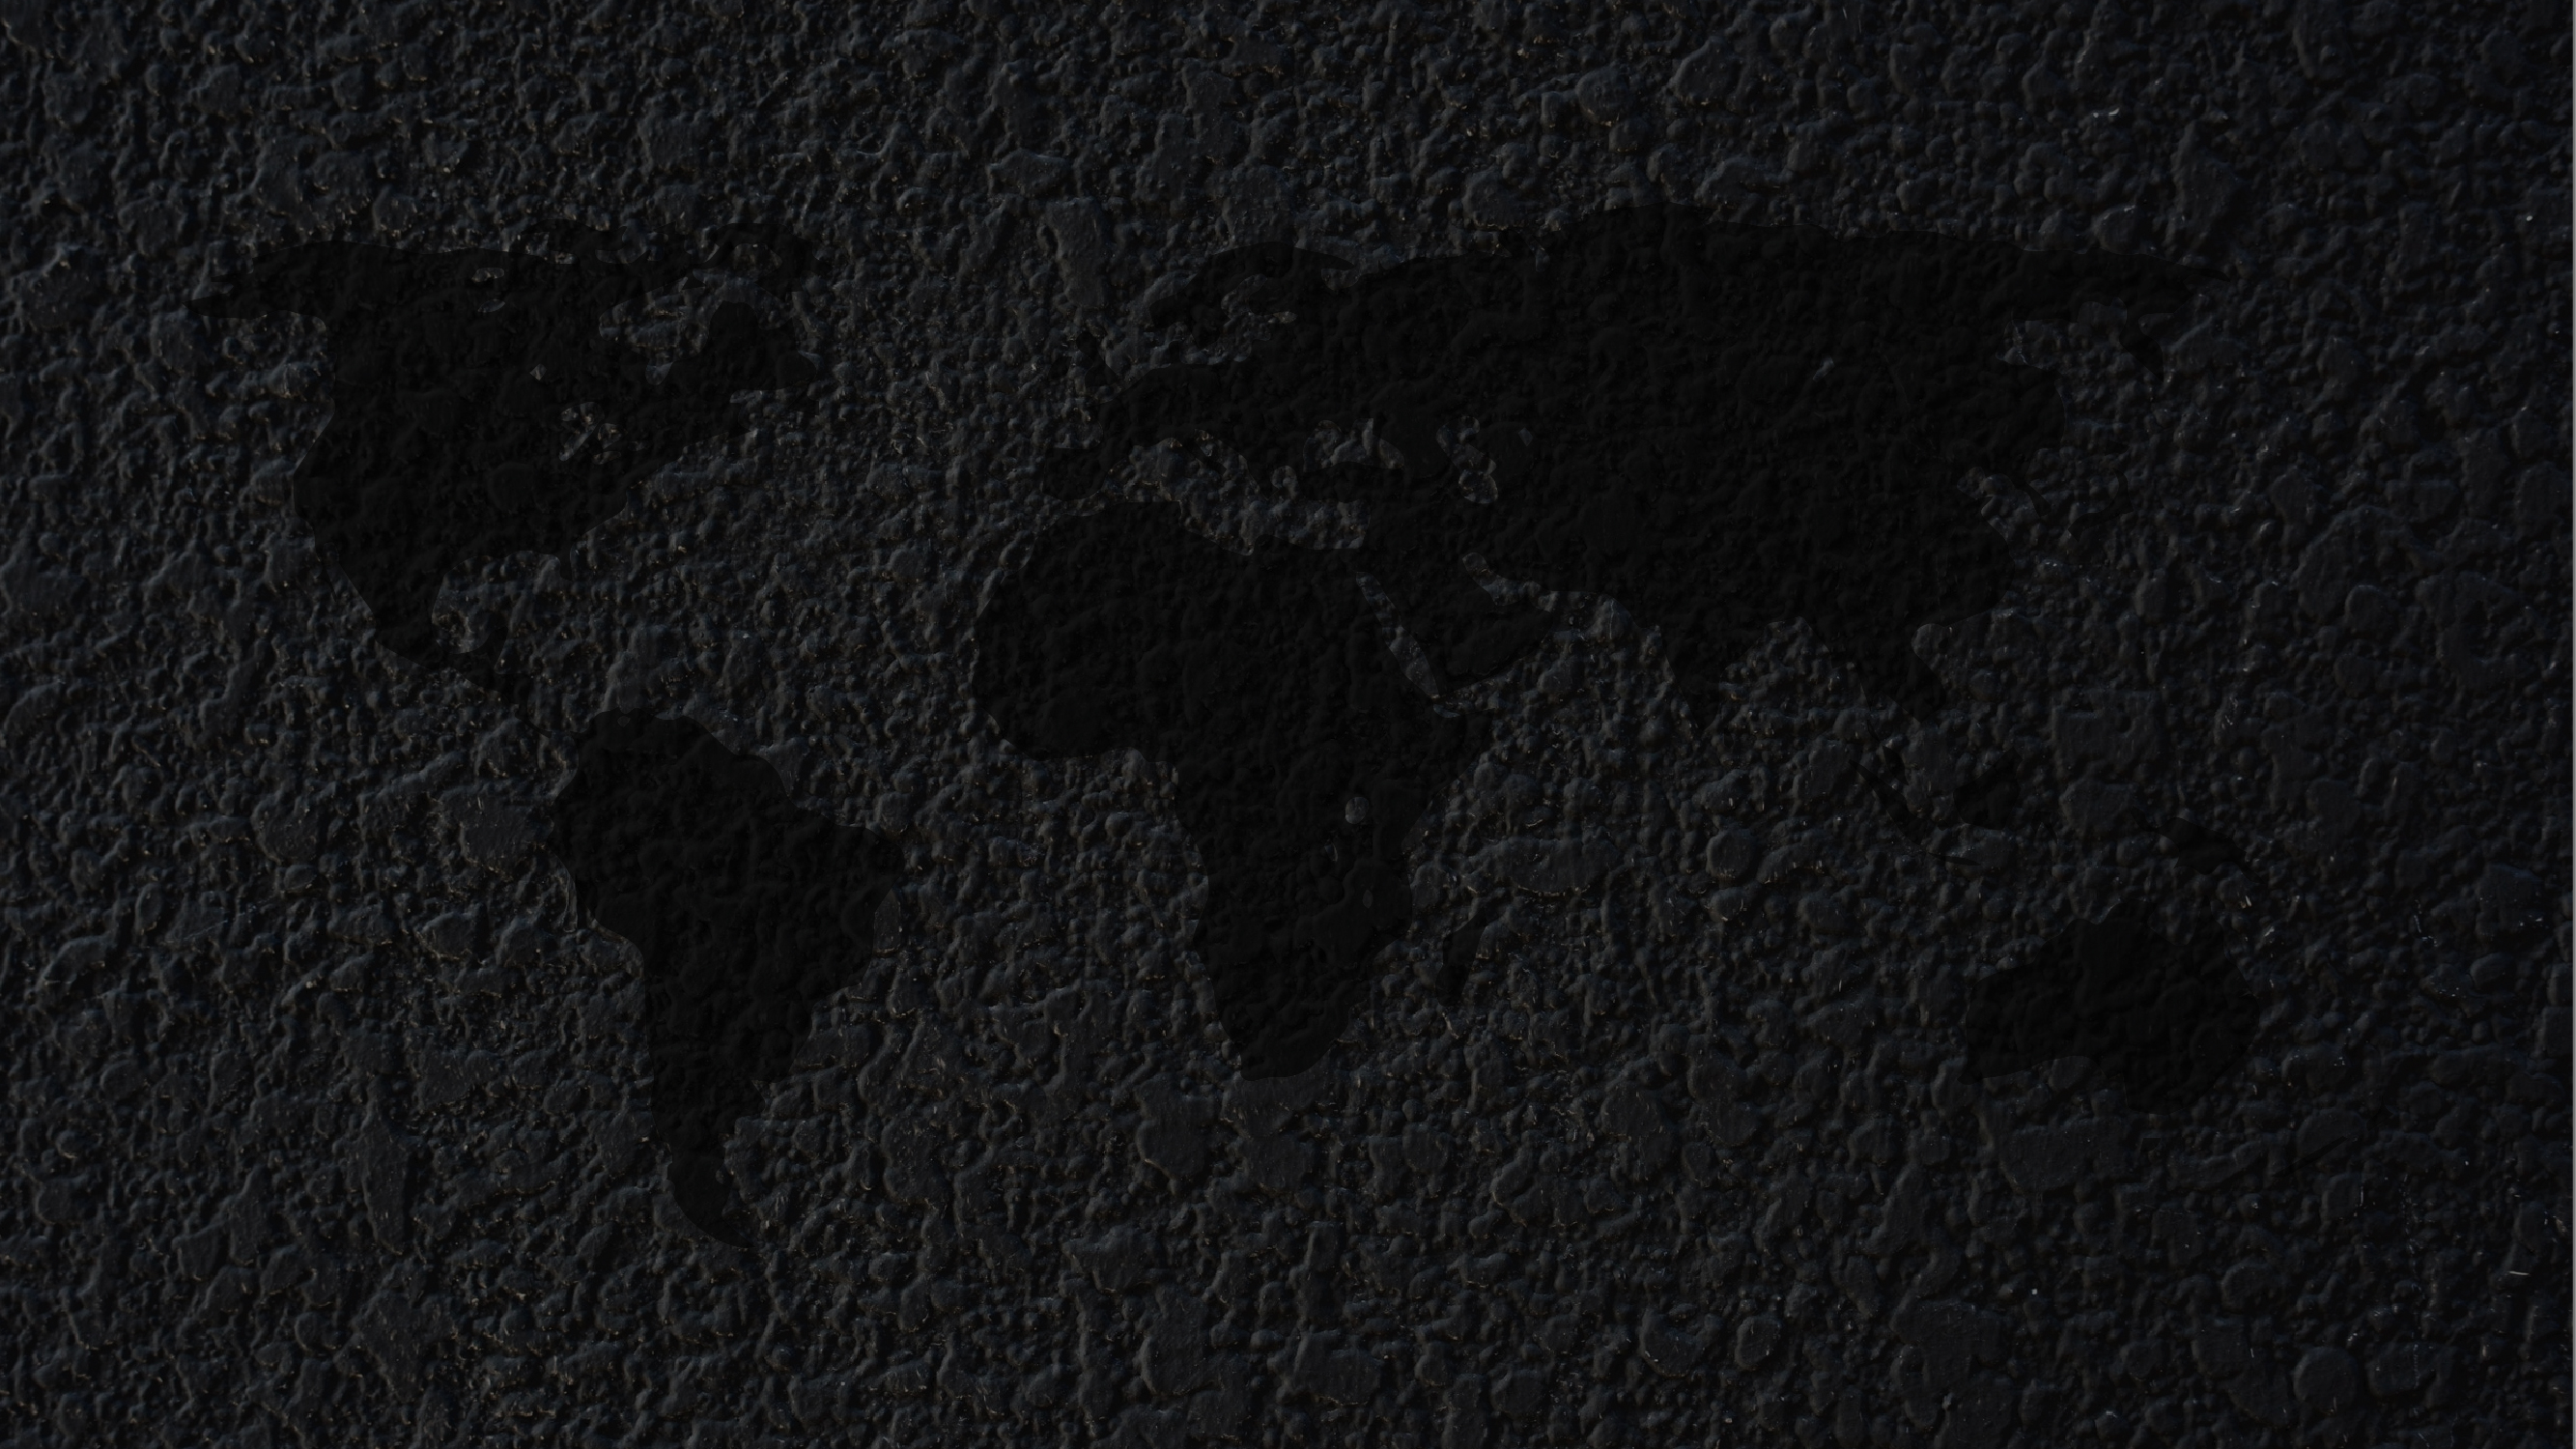 world map [1920x1080]  World map wallpaper, Desktop wallpaper black, Dark  desktop backgrounds